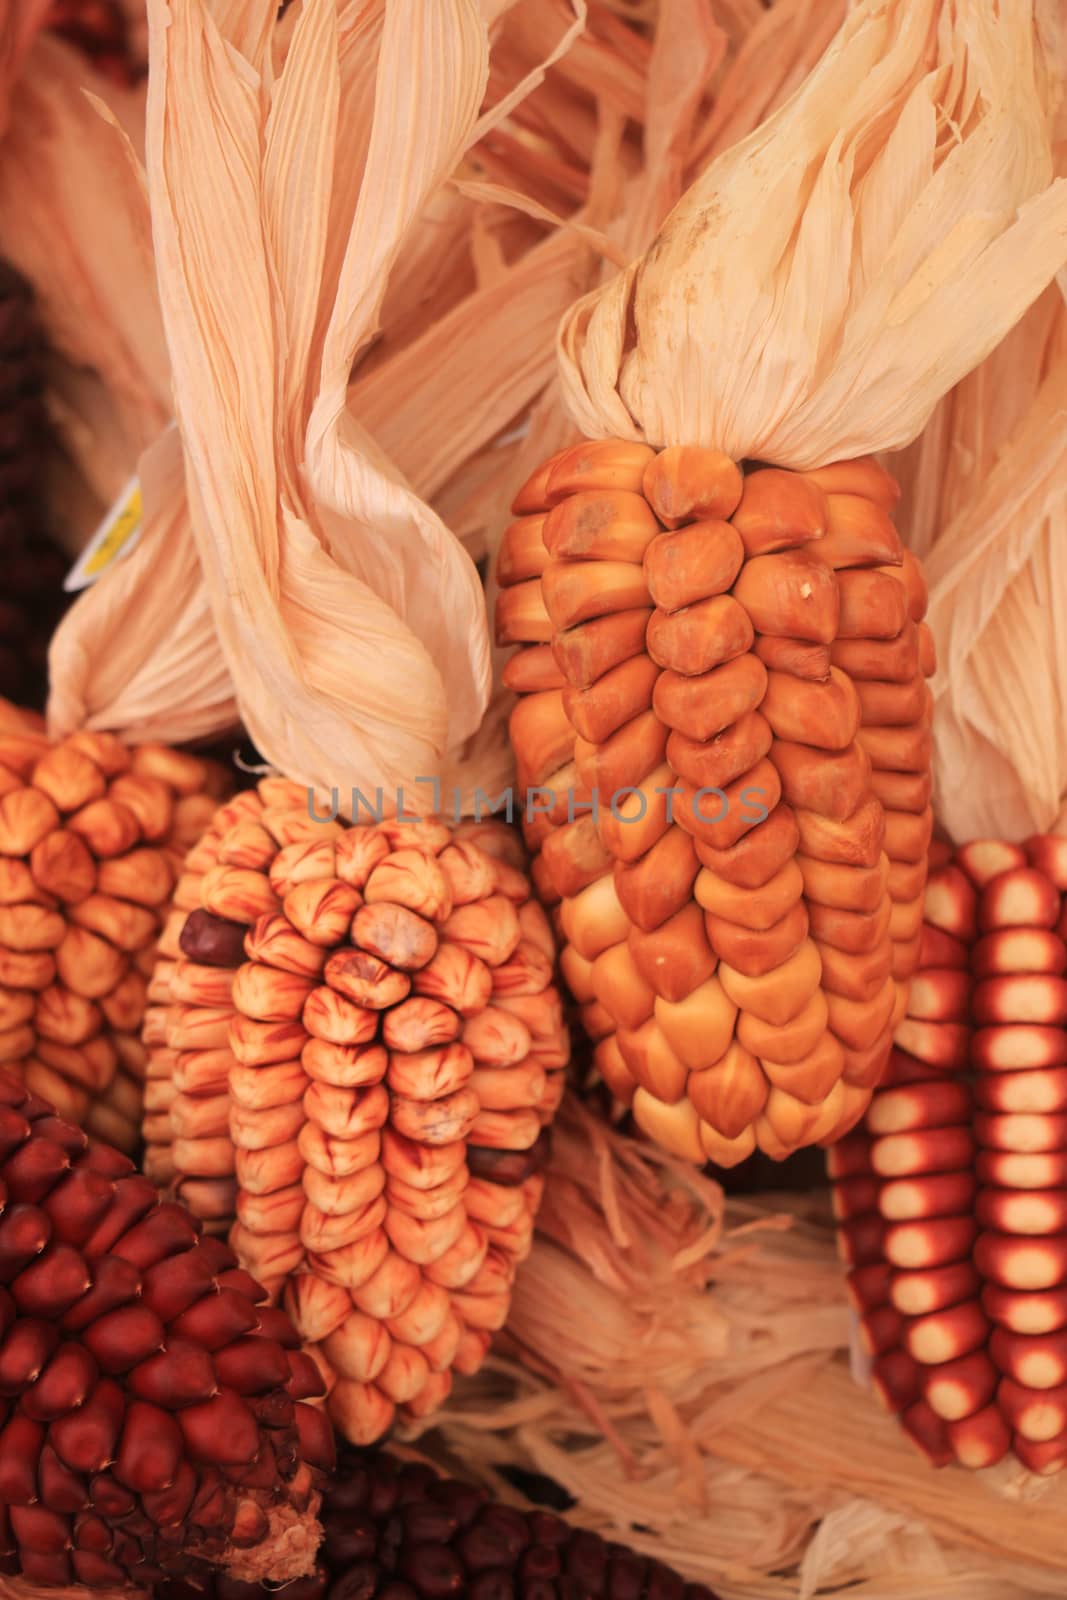 Dried corn for decorative purposes